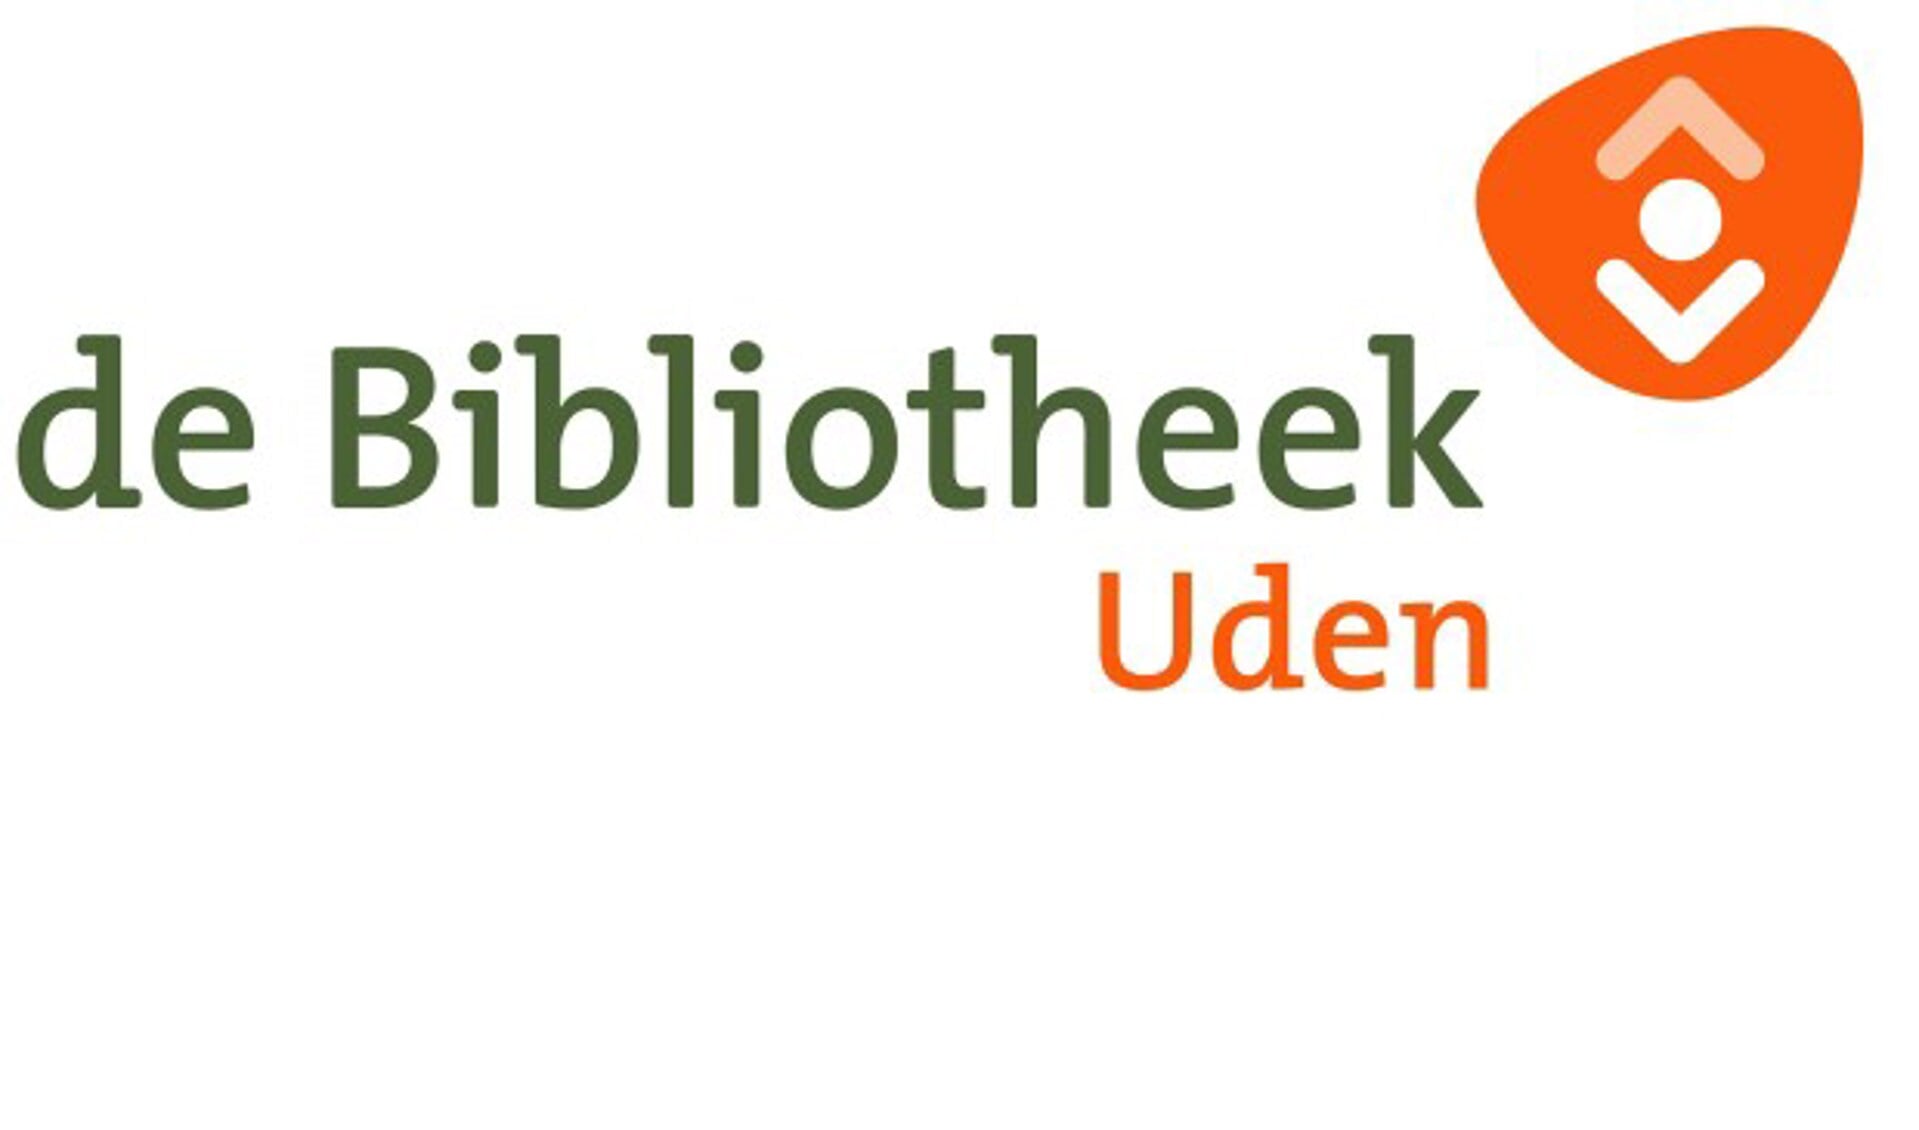  Bibliotheek Uden verzorgt op vrijdag 5 januari het Historisch café Uden.